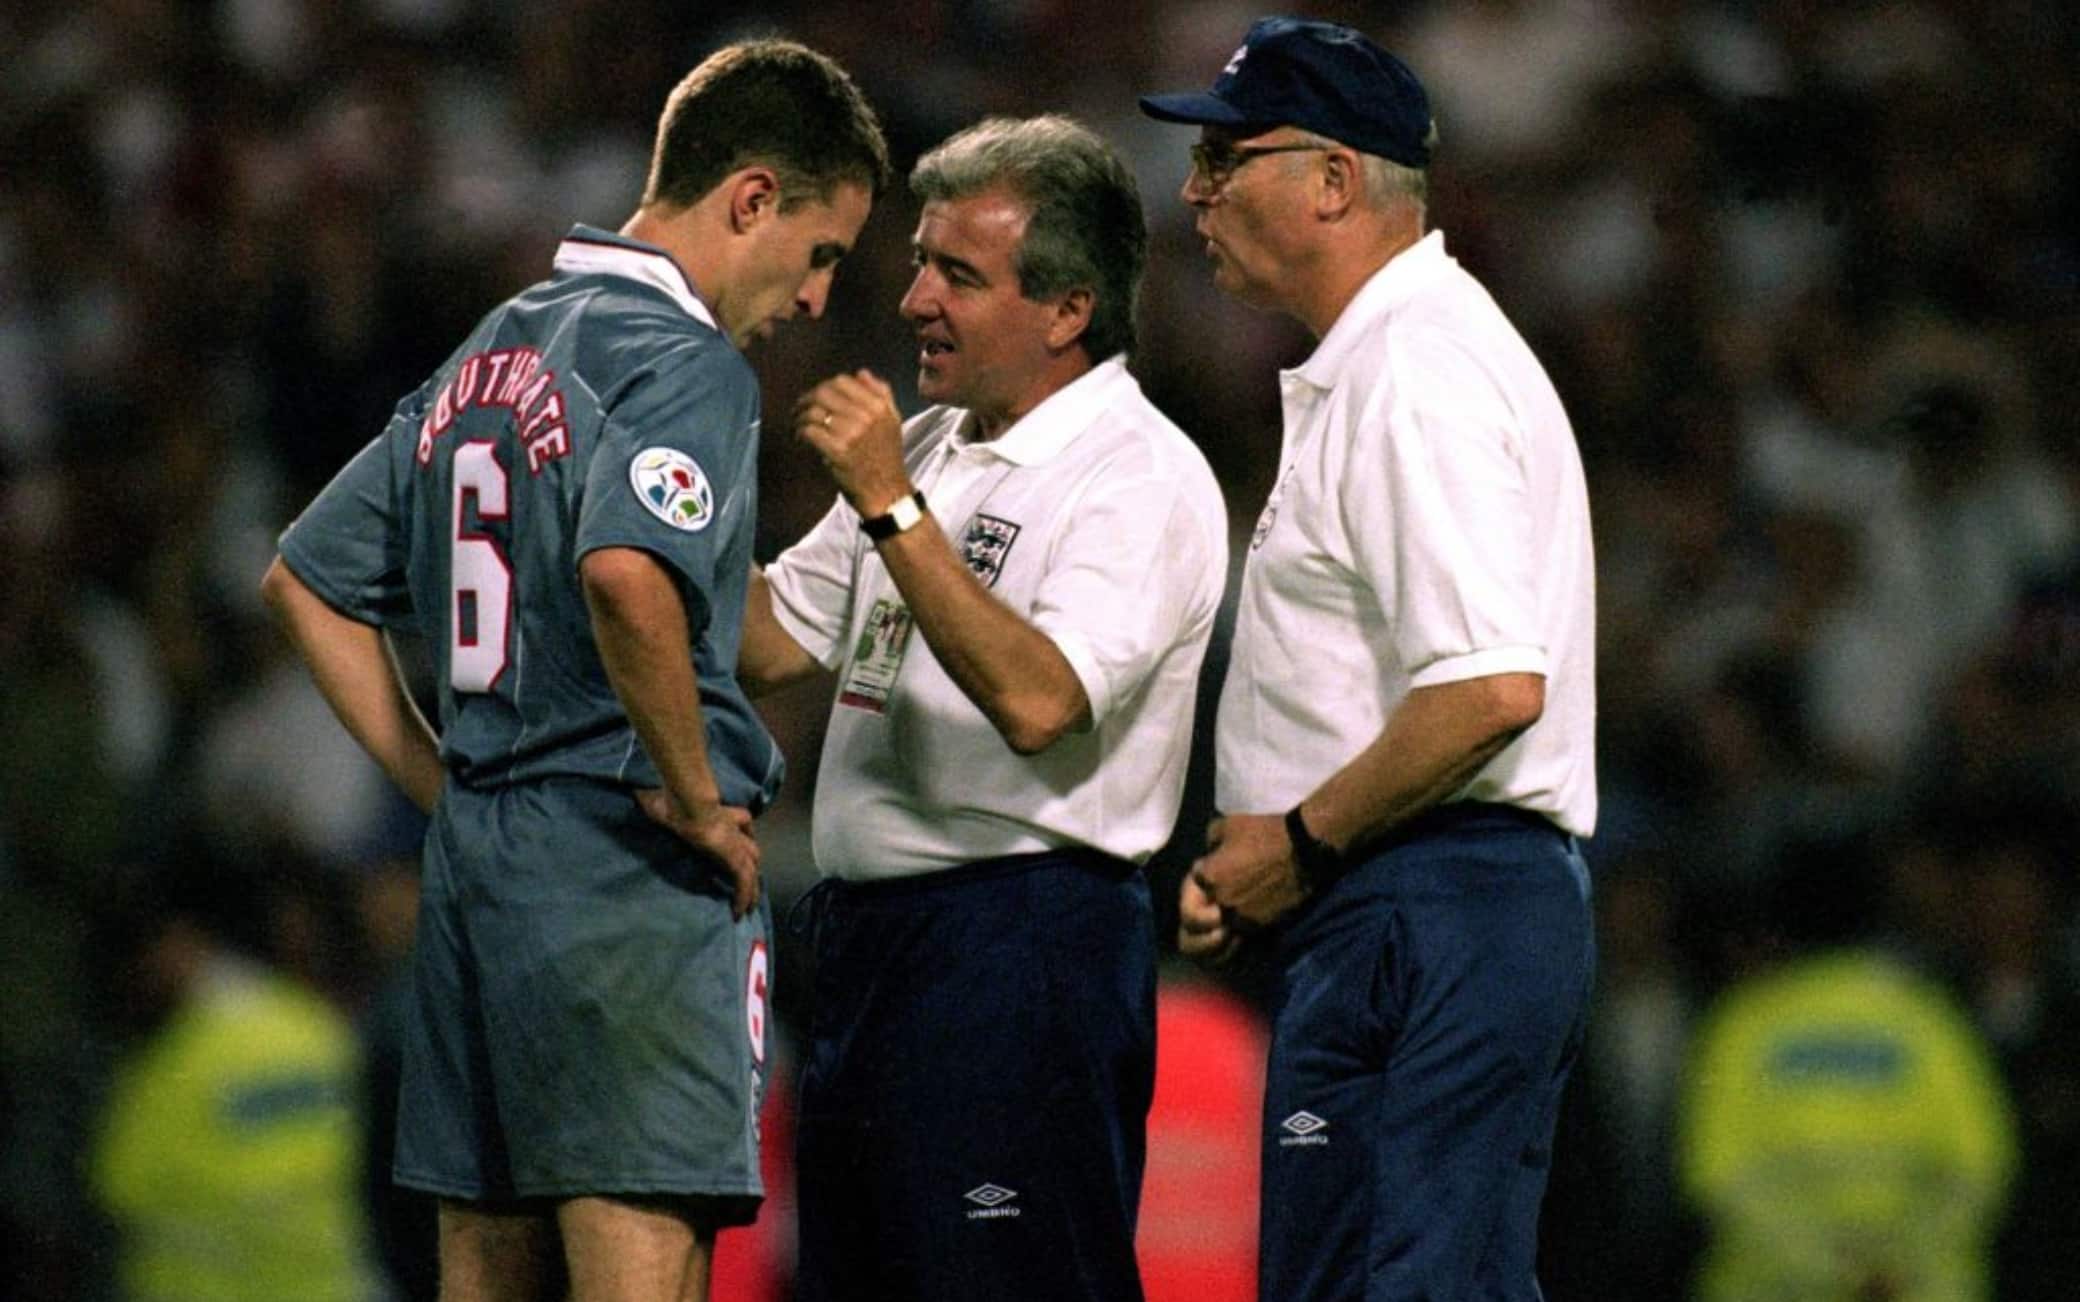 Terry Venables consola Soutghate (attuale Ct dell'Inghilterra) dopo il rigore fallito nella semifinale dell'Europeo del 1996 contro la Germania